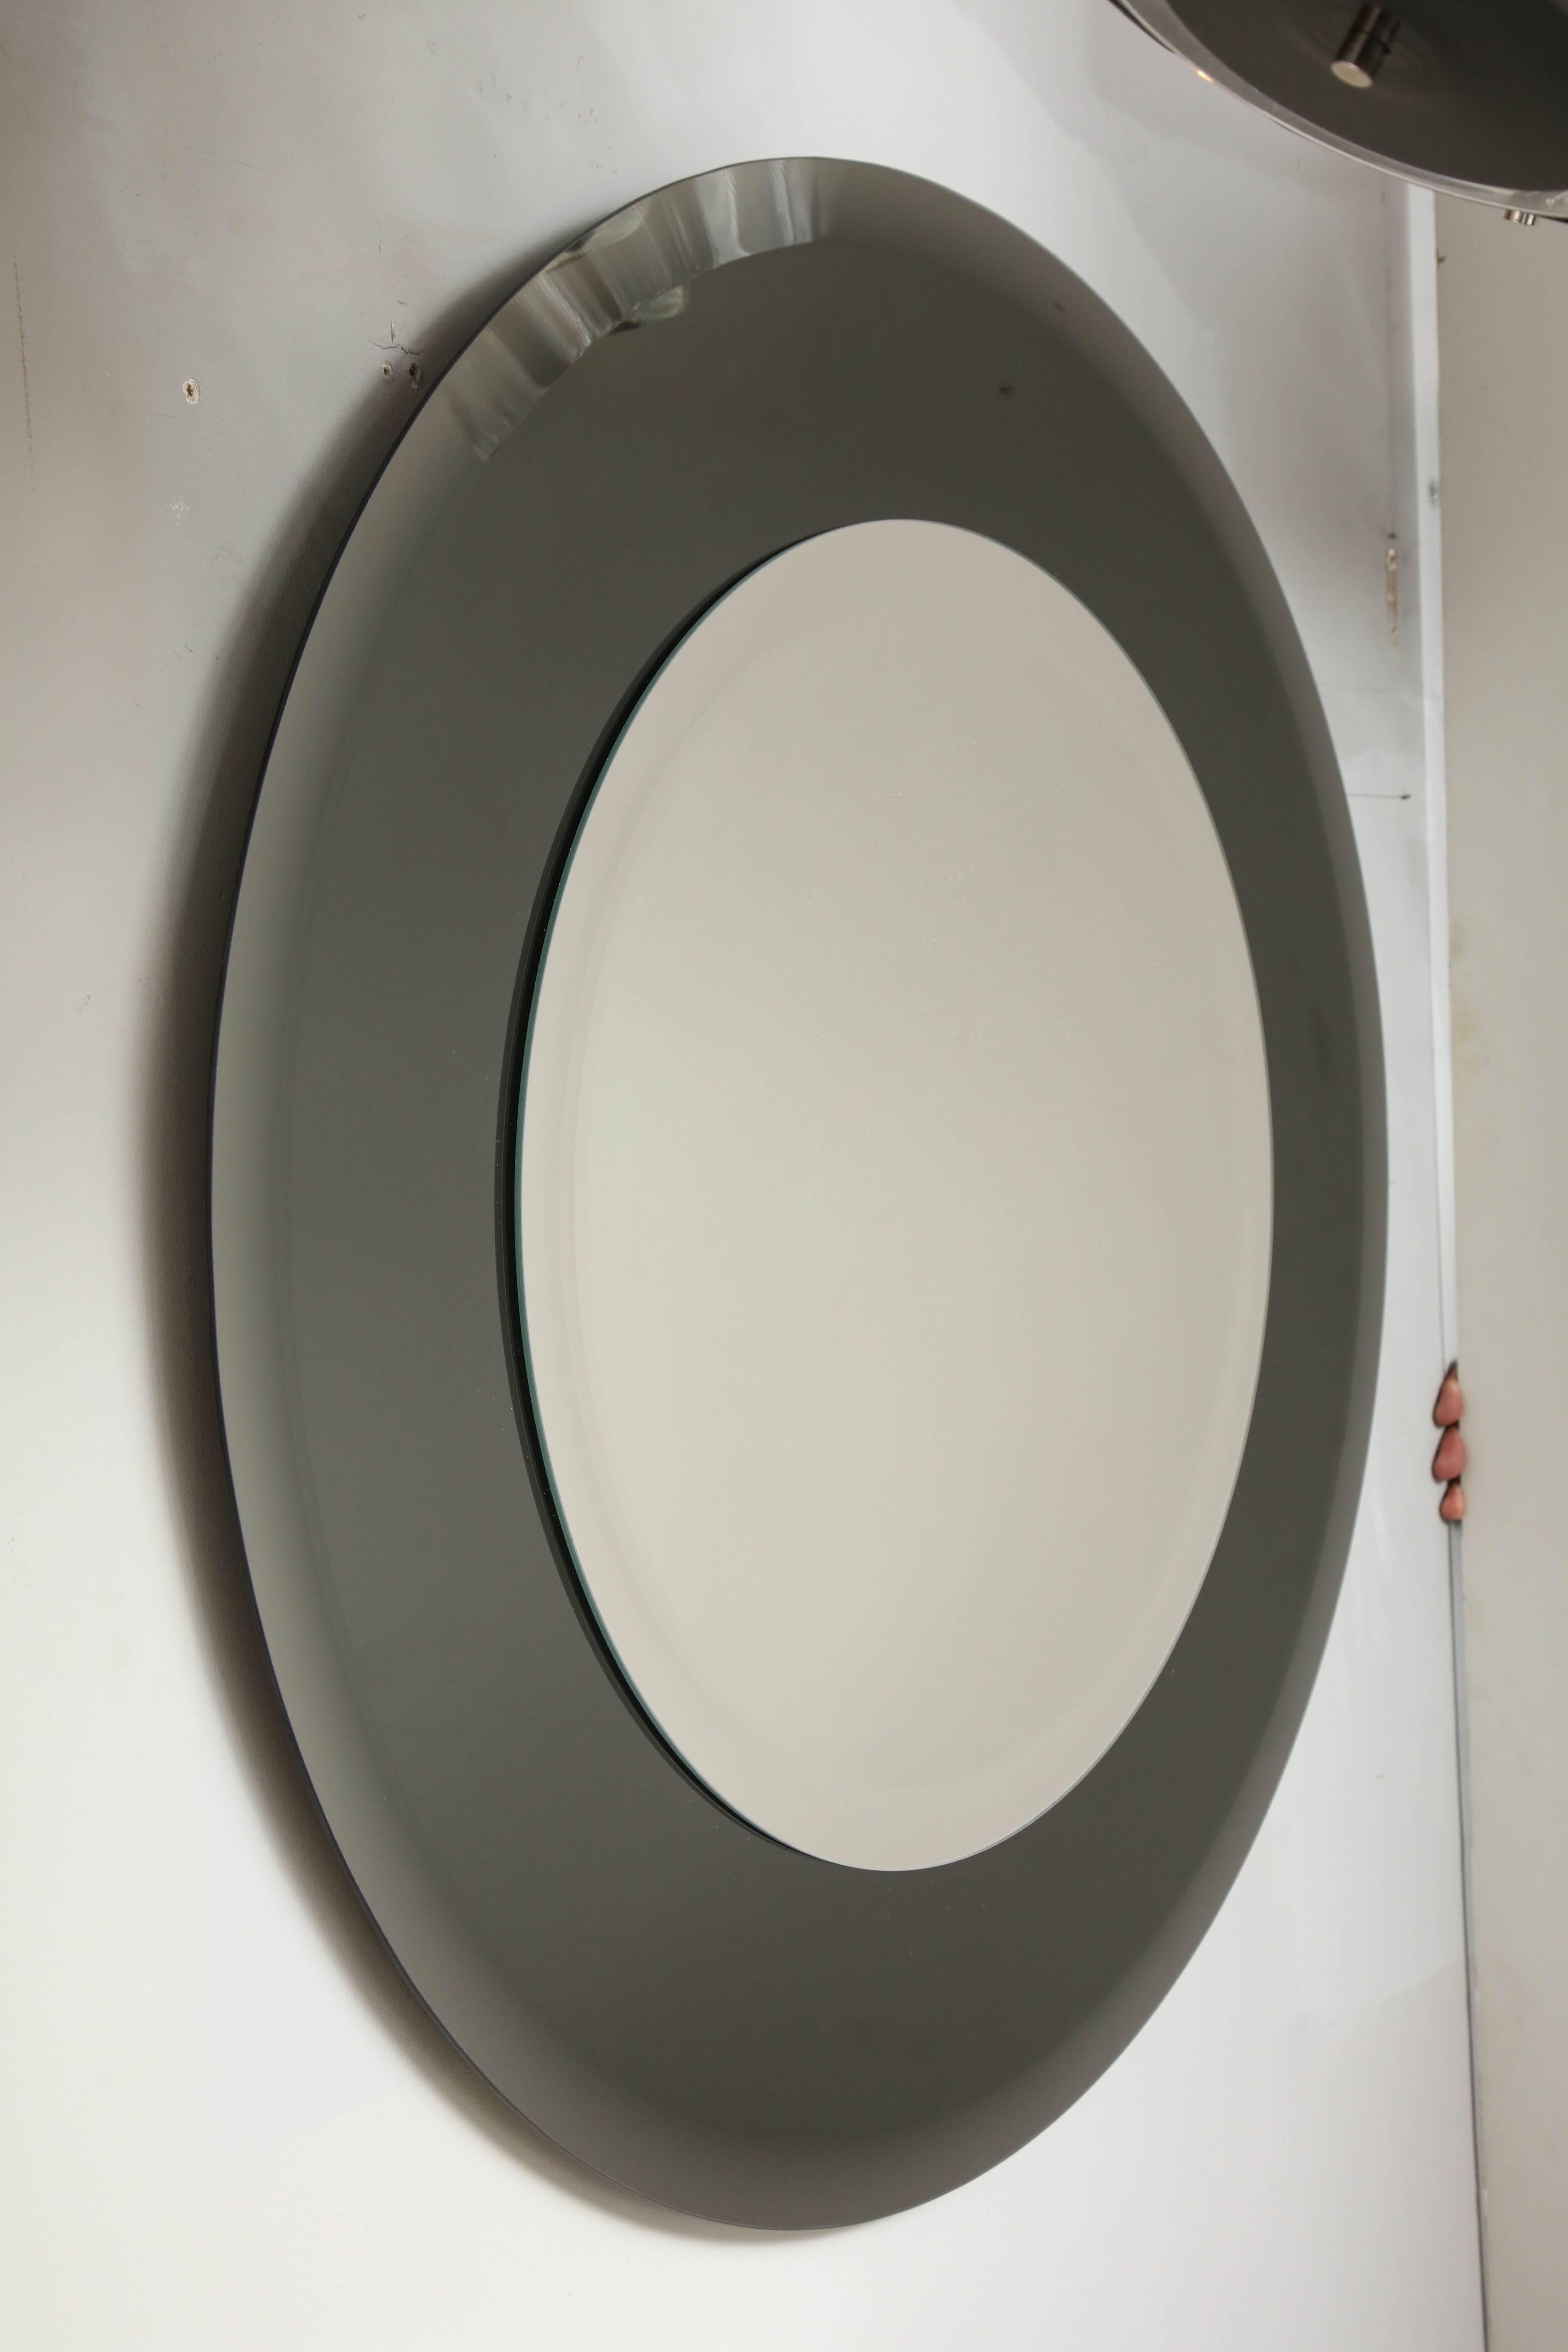 Runder Spiegel mit abgeschrägter Kante und Rauchglasrand. Der Spiegel in der Mitte ist 22